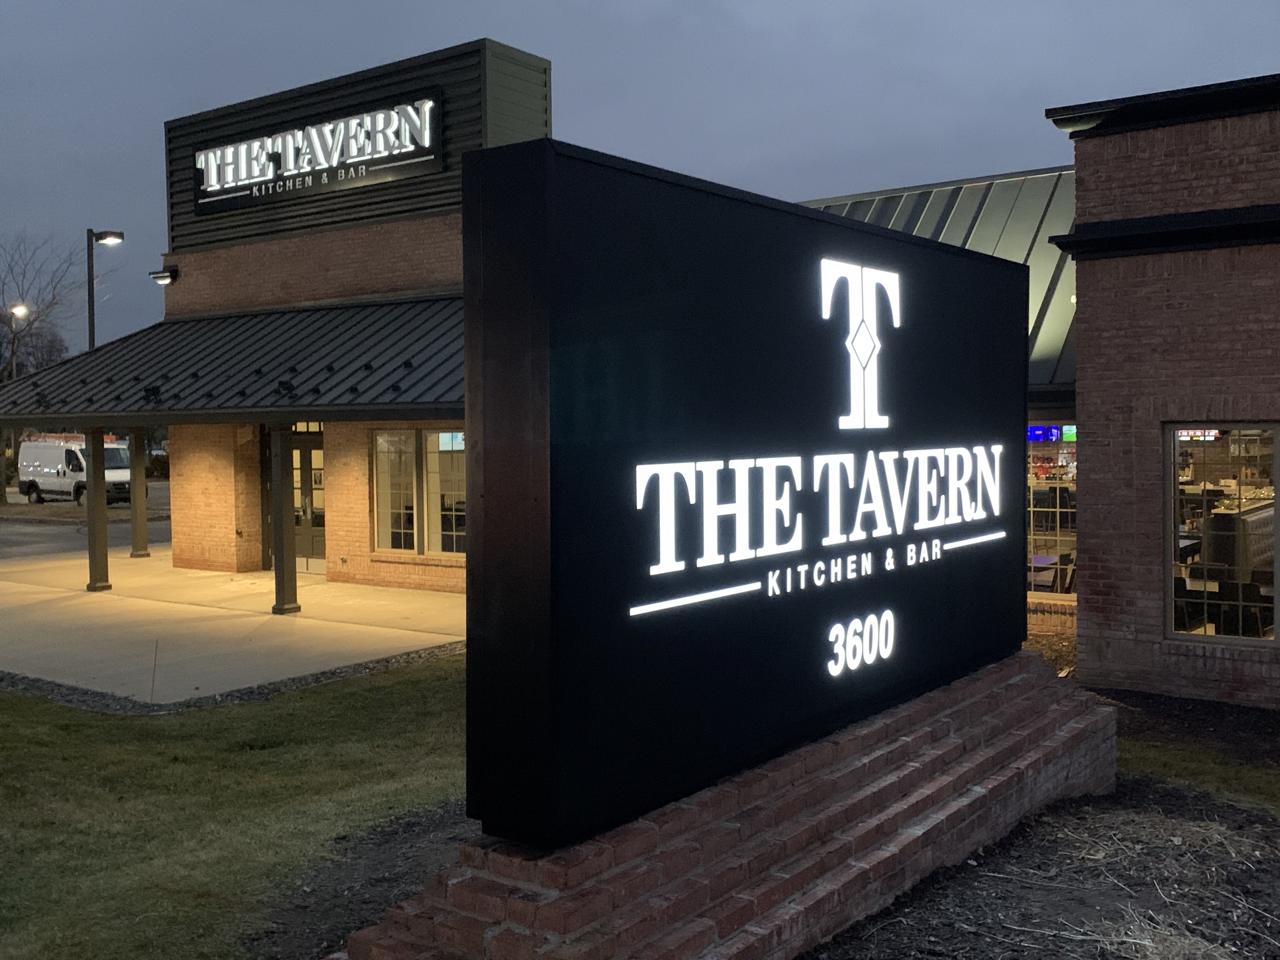 The Tavern Kitchen & Bar